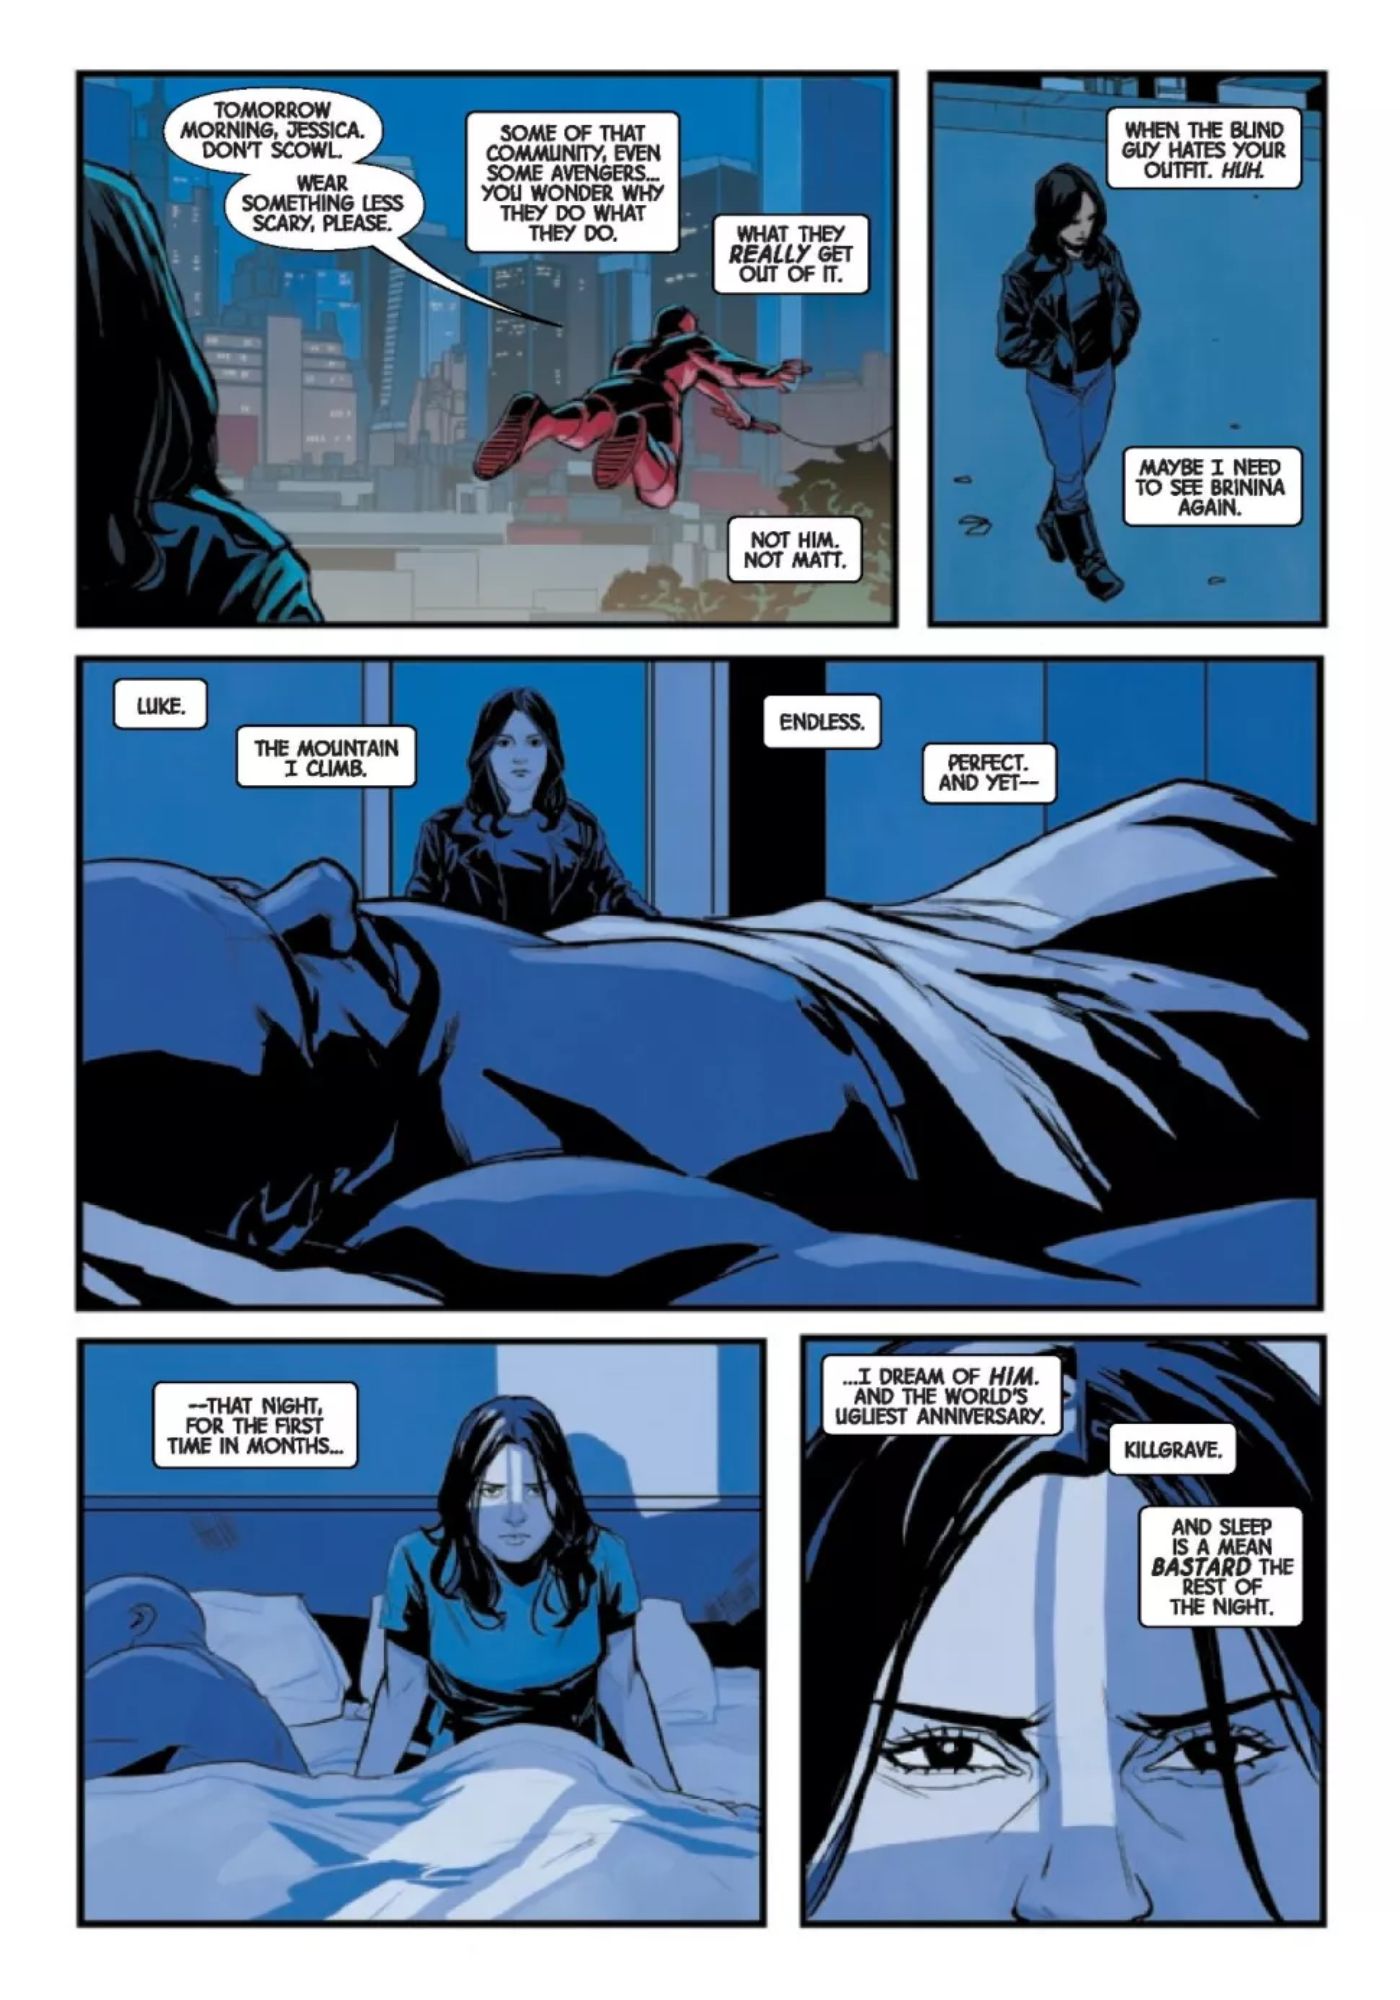 Daredevil Powers Jessica Jones 2